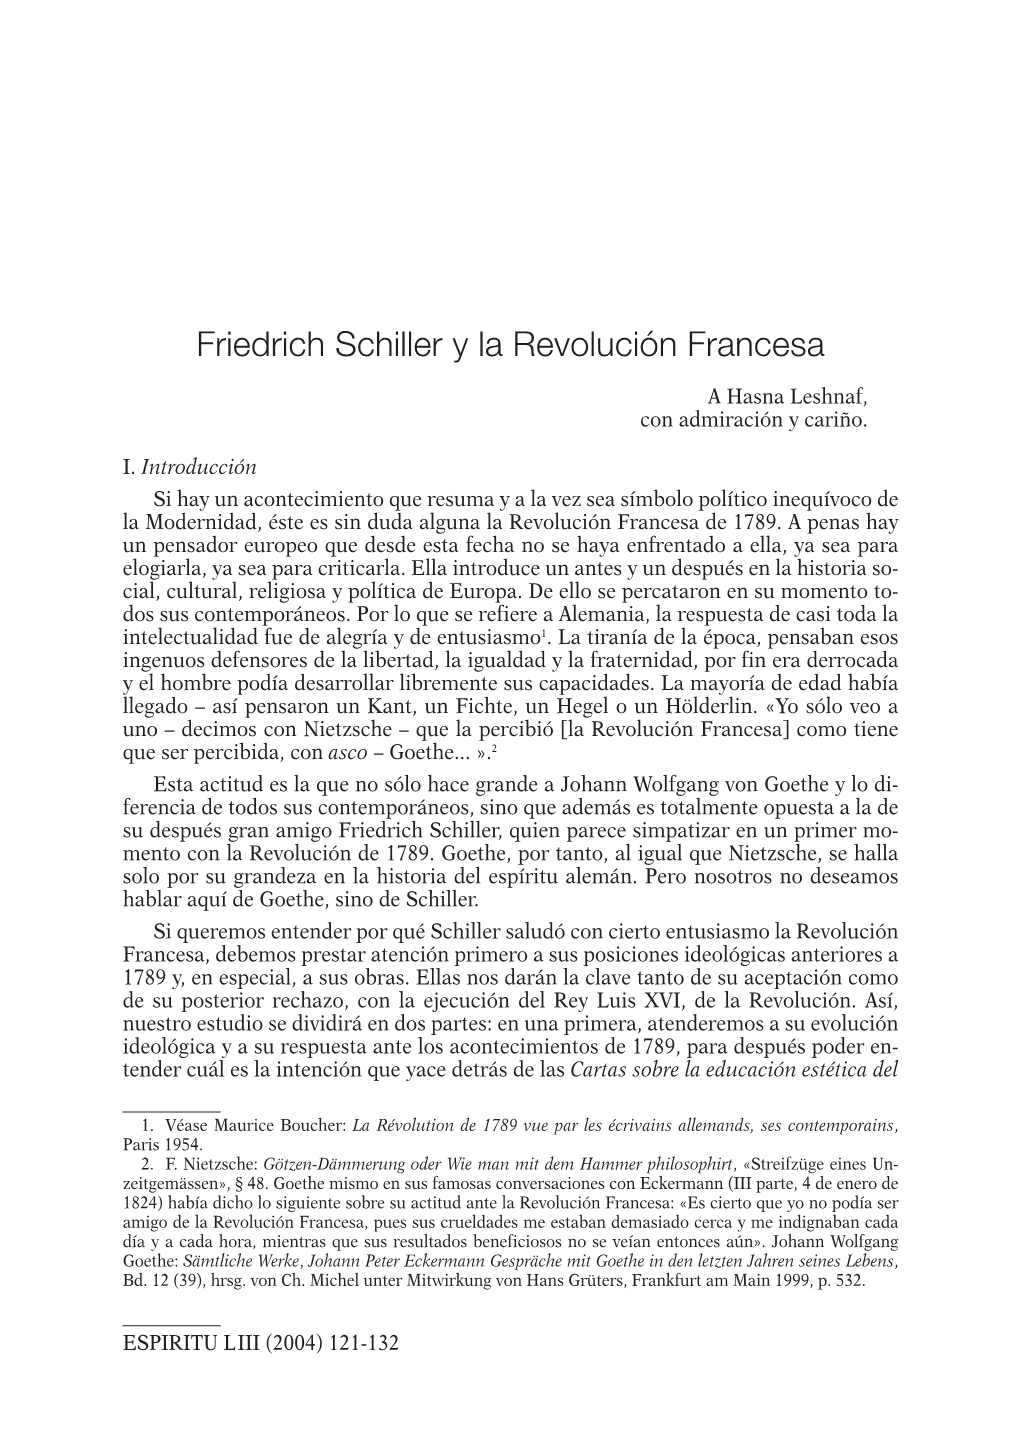 Friedrich Schiller Y La Revolución Francesa